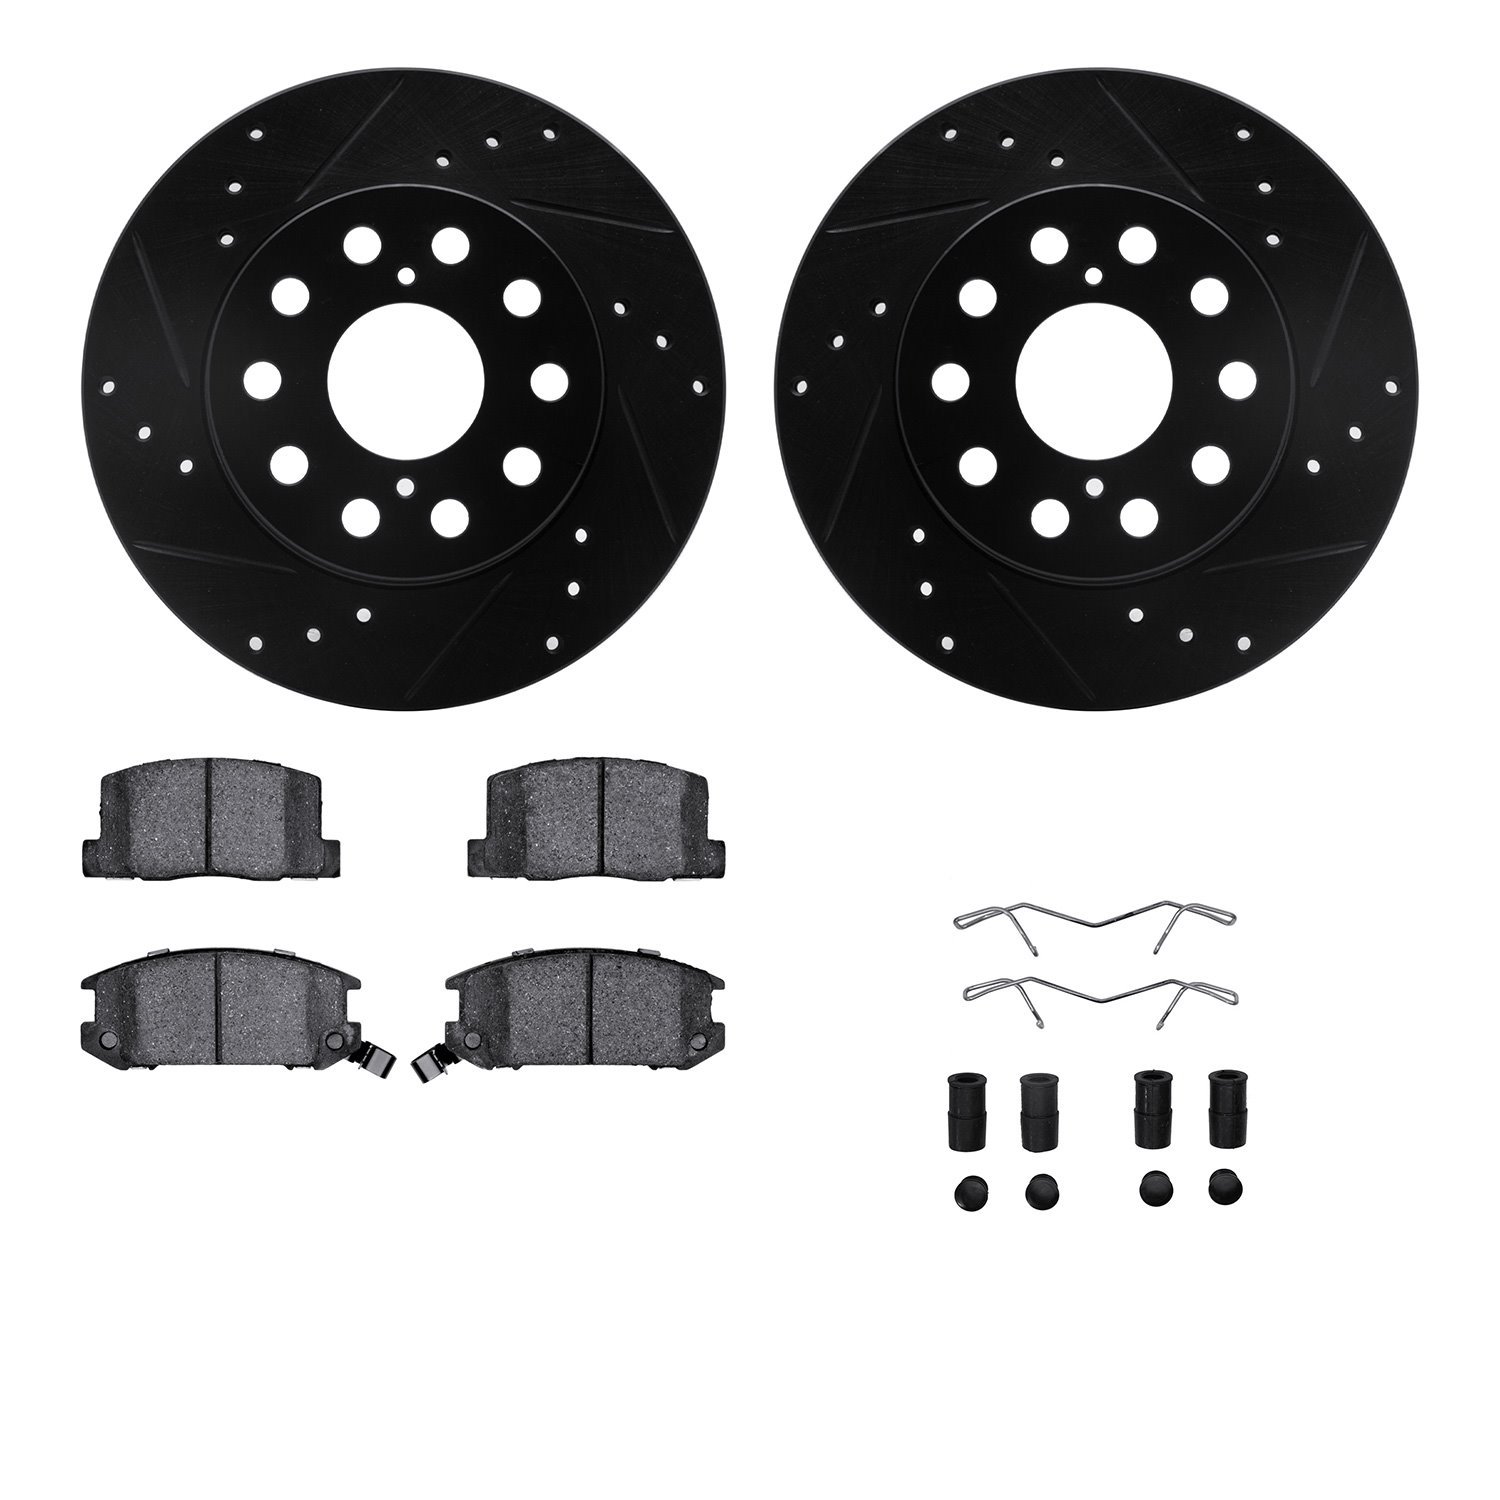 8312-76108 Drilled/Slotted Brake Rotors with 3000-Series Ceramic Brake Pads Kit & Hardware [Black], 1991-1995 Lexus/Toyota/Scion